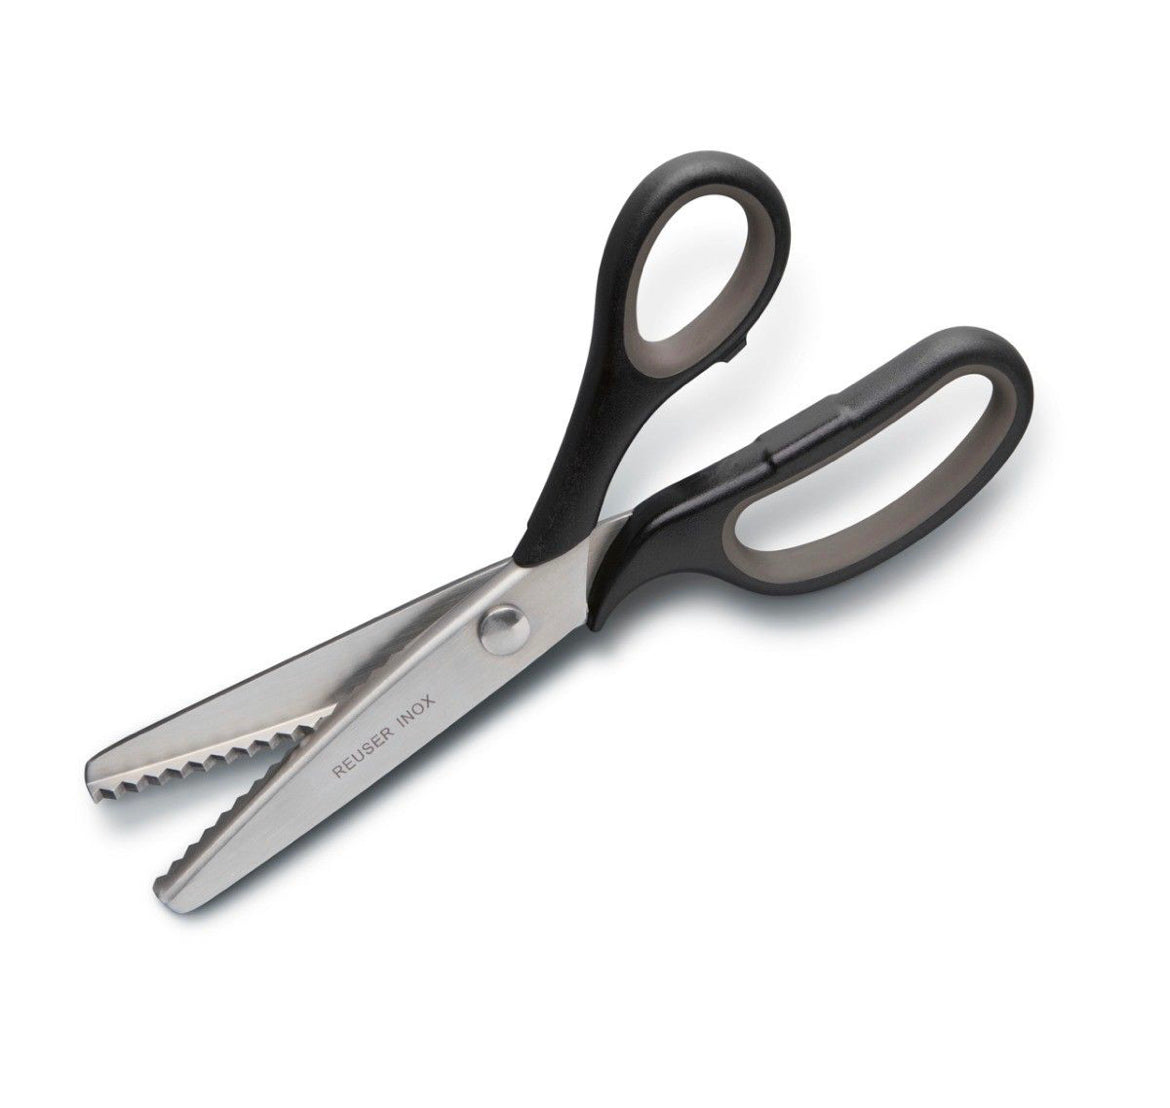 Reuser Inox Comfort Soft Grip Pinking Scissors - 9 inches